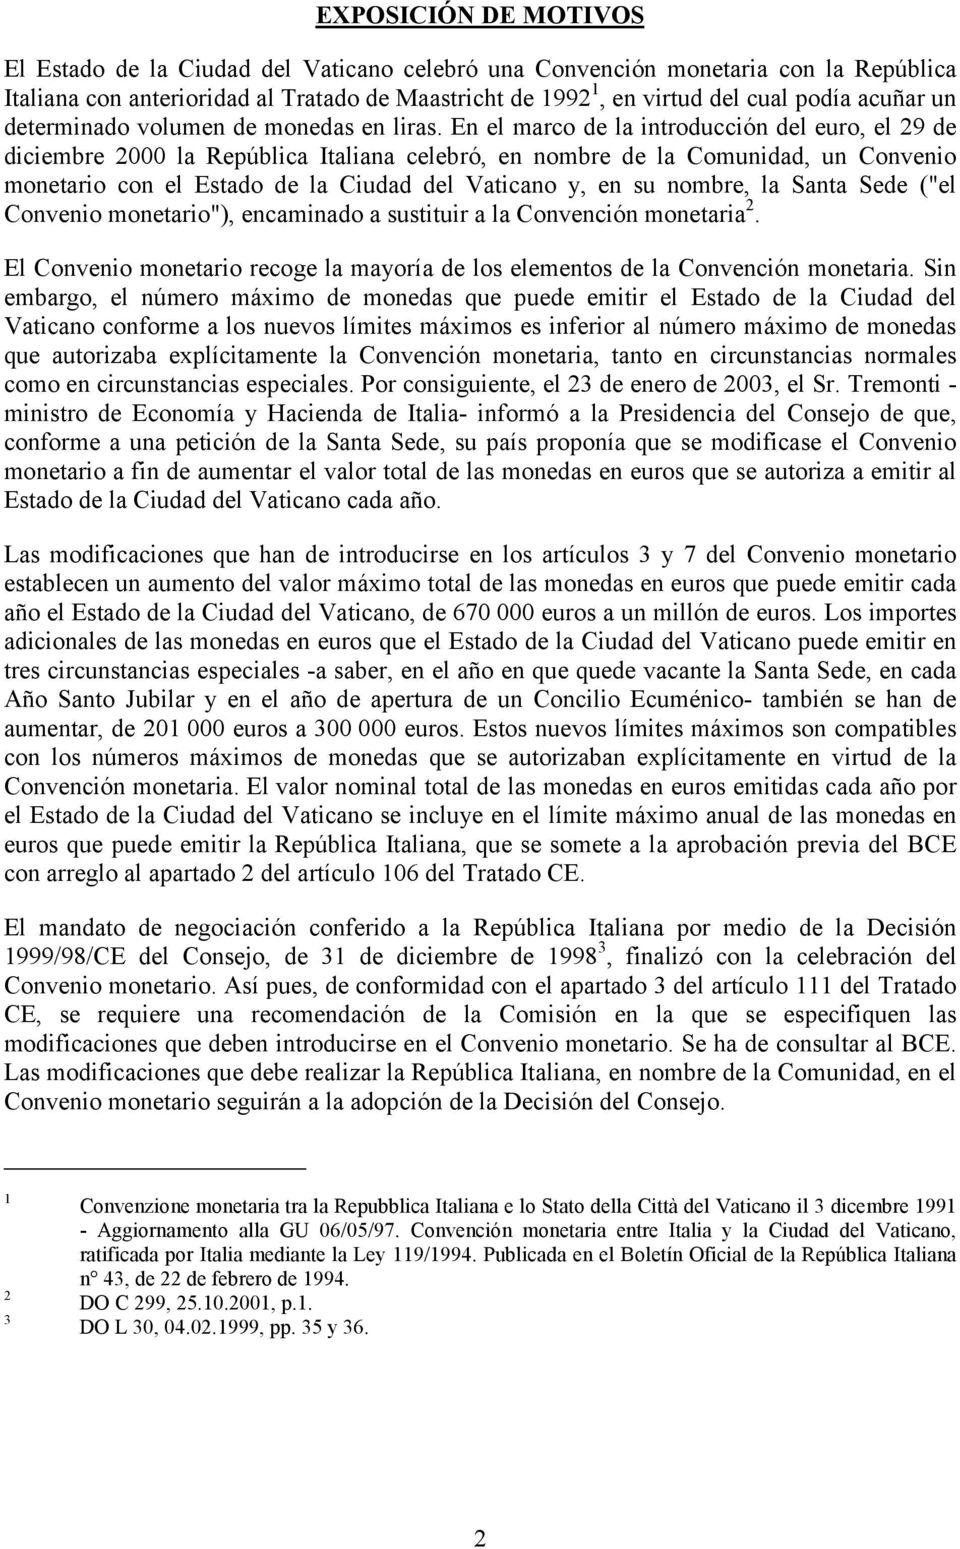 En el marco de la introducción del euro, el 29 de diciembre 2000 la República Italiana celebró, en nombre de la Comunidad, un Convenio monetario con el Estado de la Ciudad del Vaticano y, en su